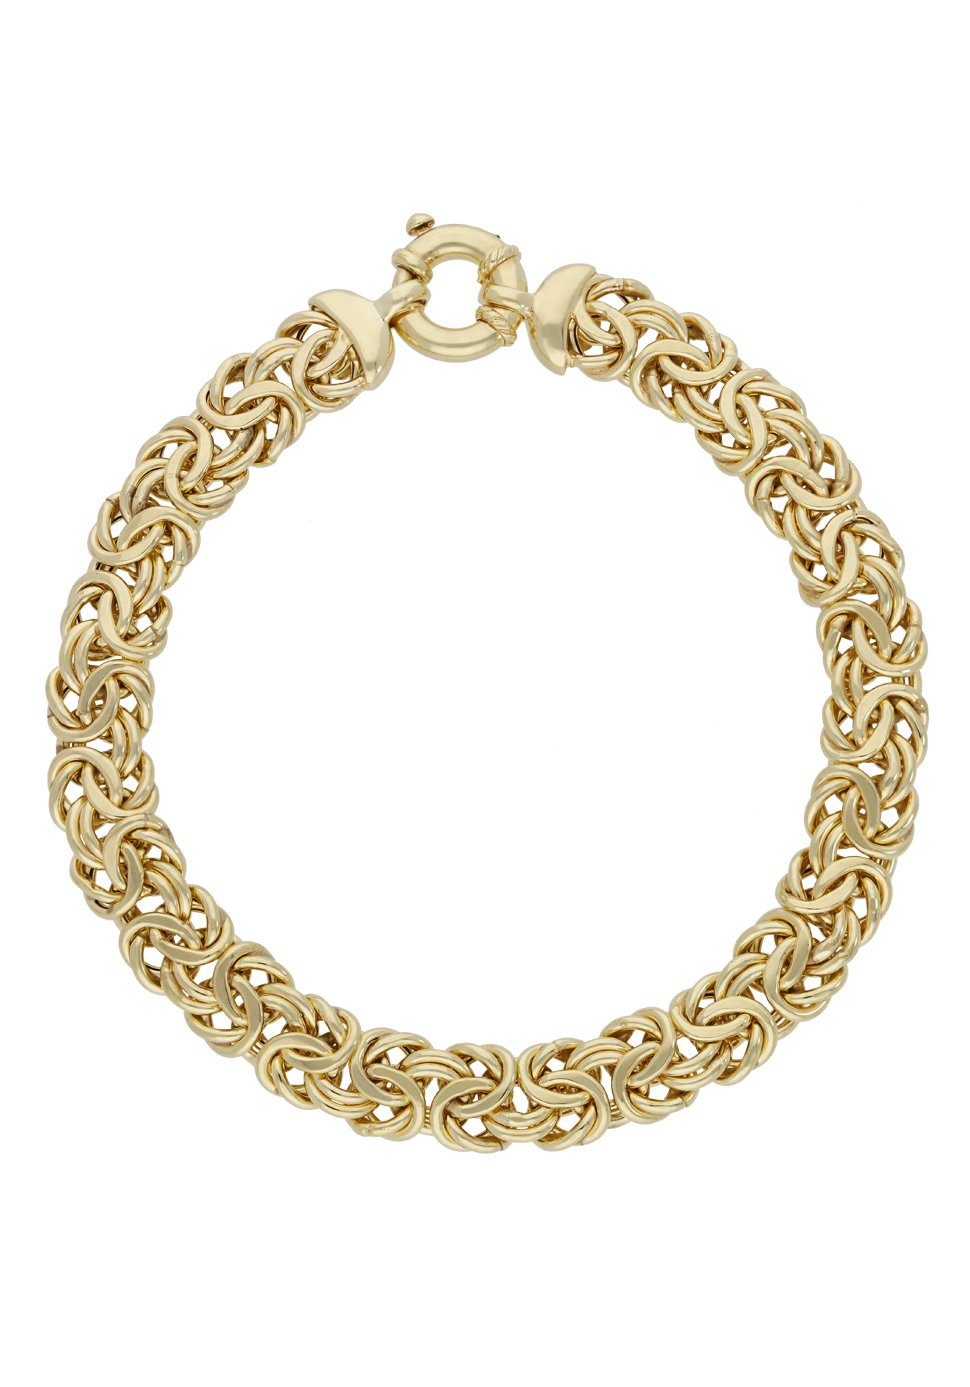 Firetti Armkette Schmuck Geschenk Gold 375 Armschmuck Armband Goldarmband Königskette, zu Kleid, Shirt, Jeans, Sneaker! Anlass Geburtstag Weihnachten